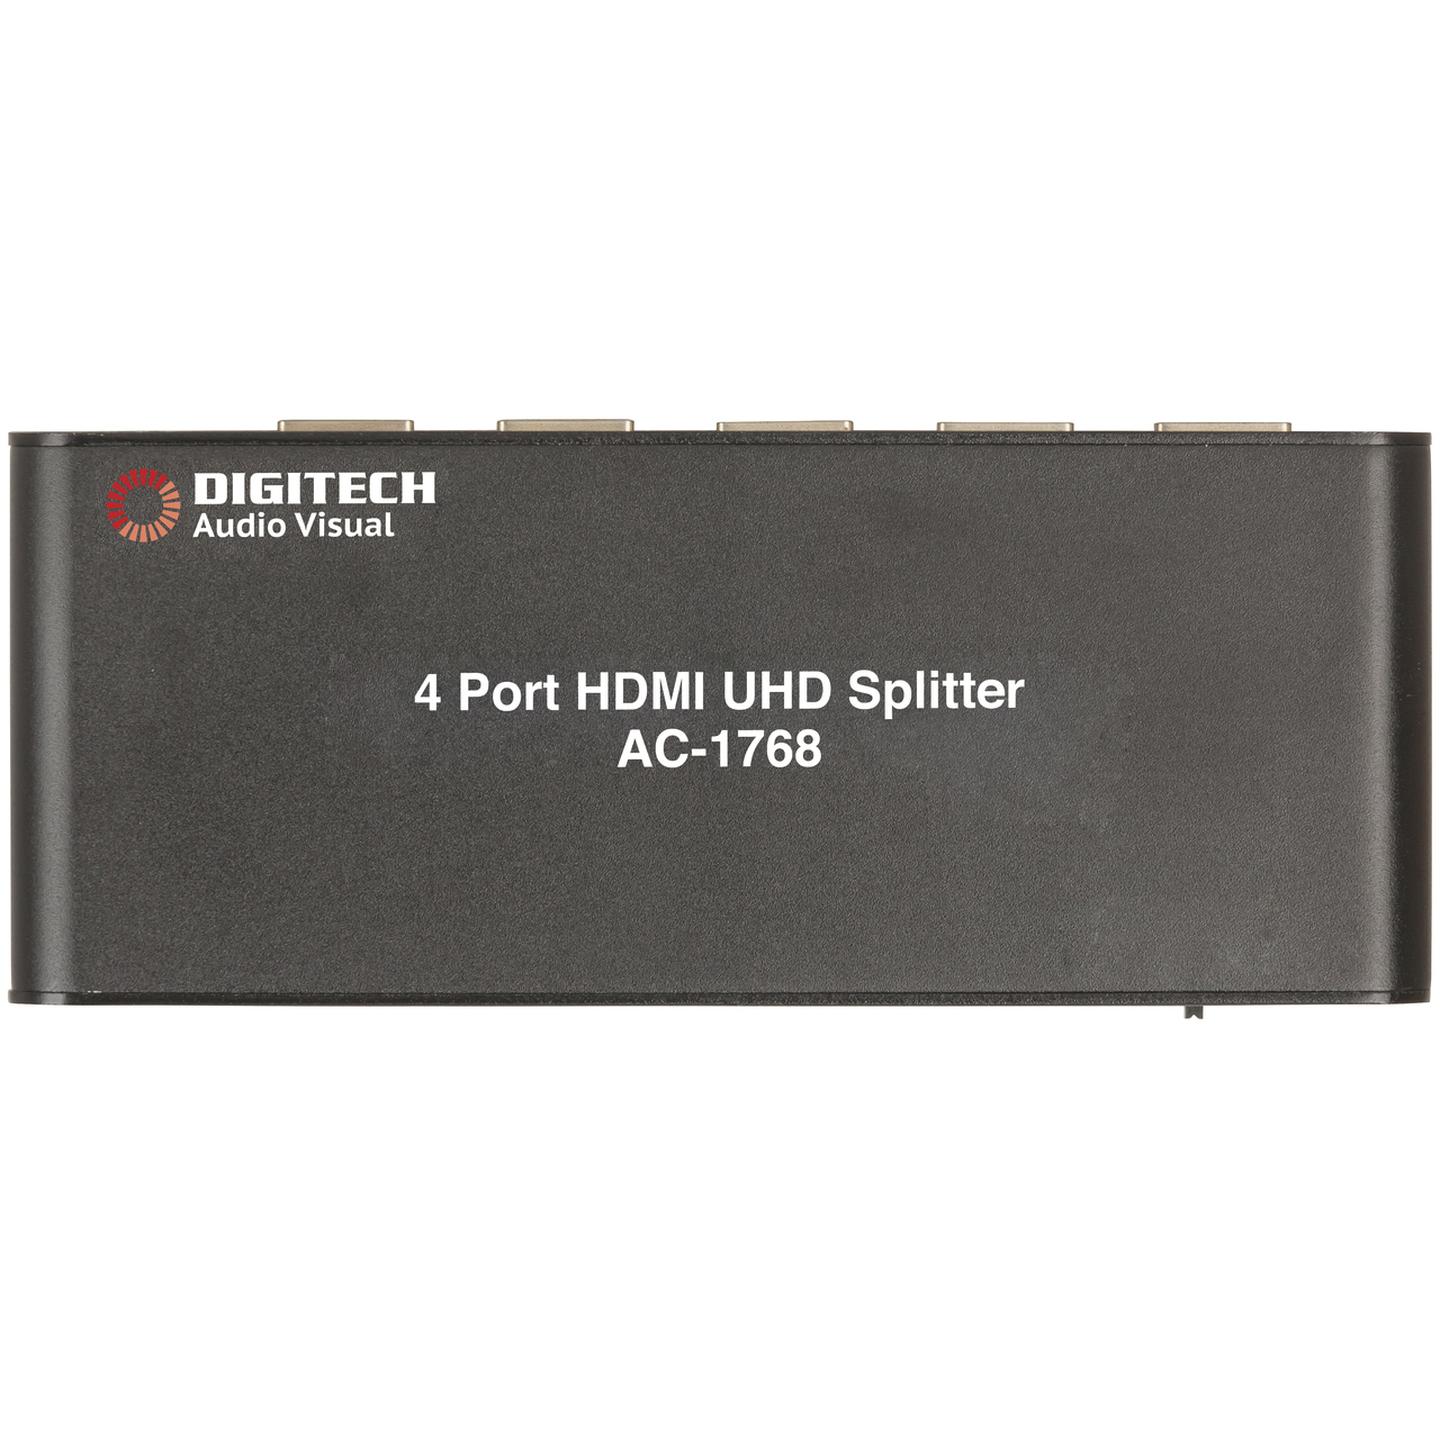 4 Way HDMI 2.0 UHD Splitter